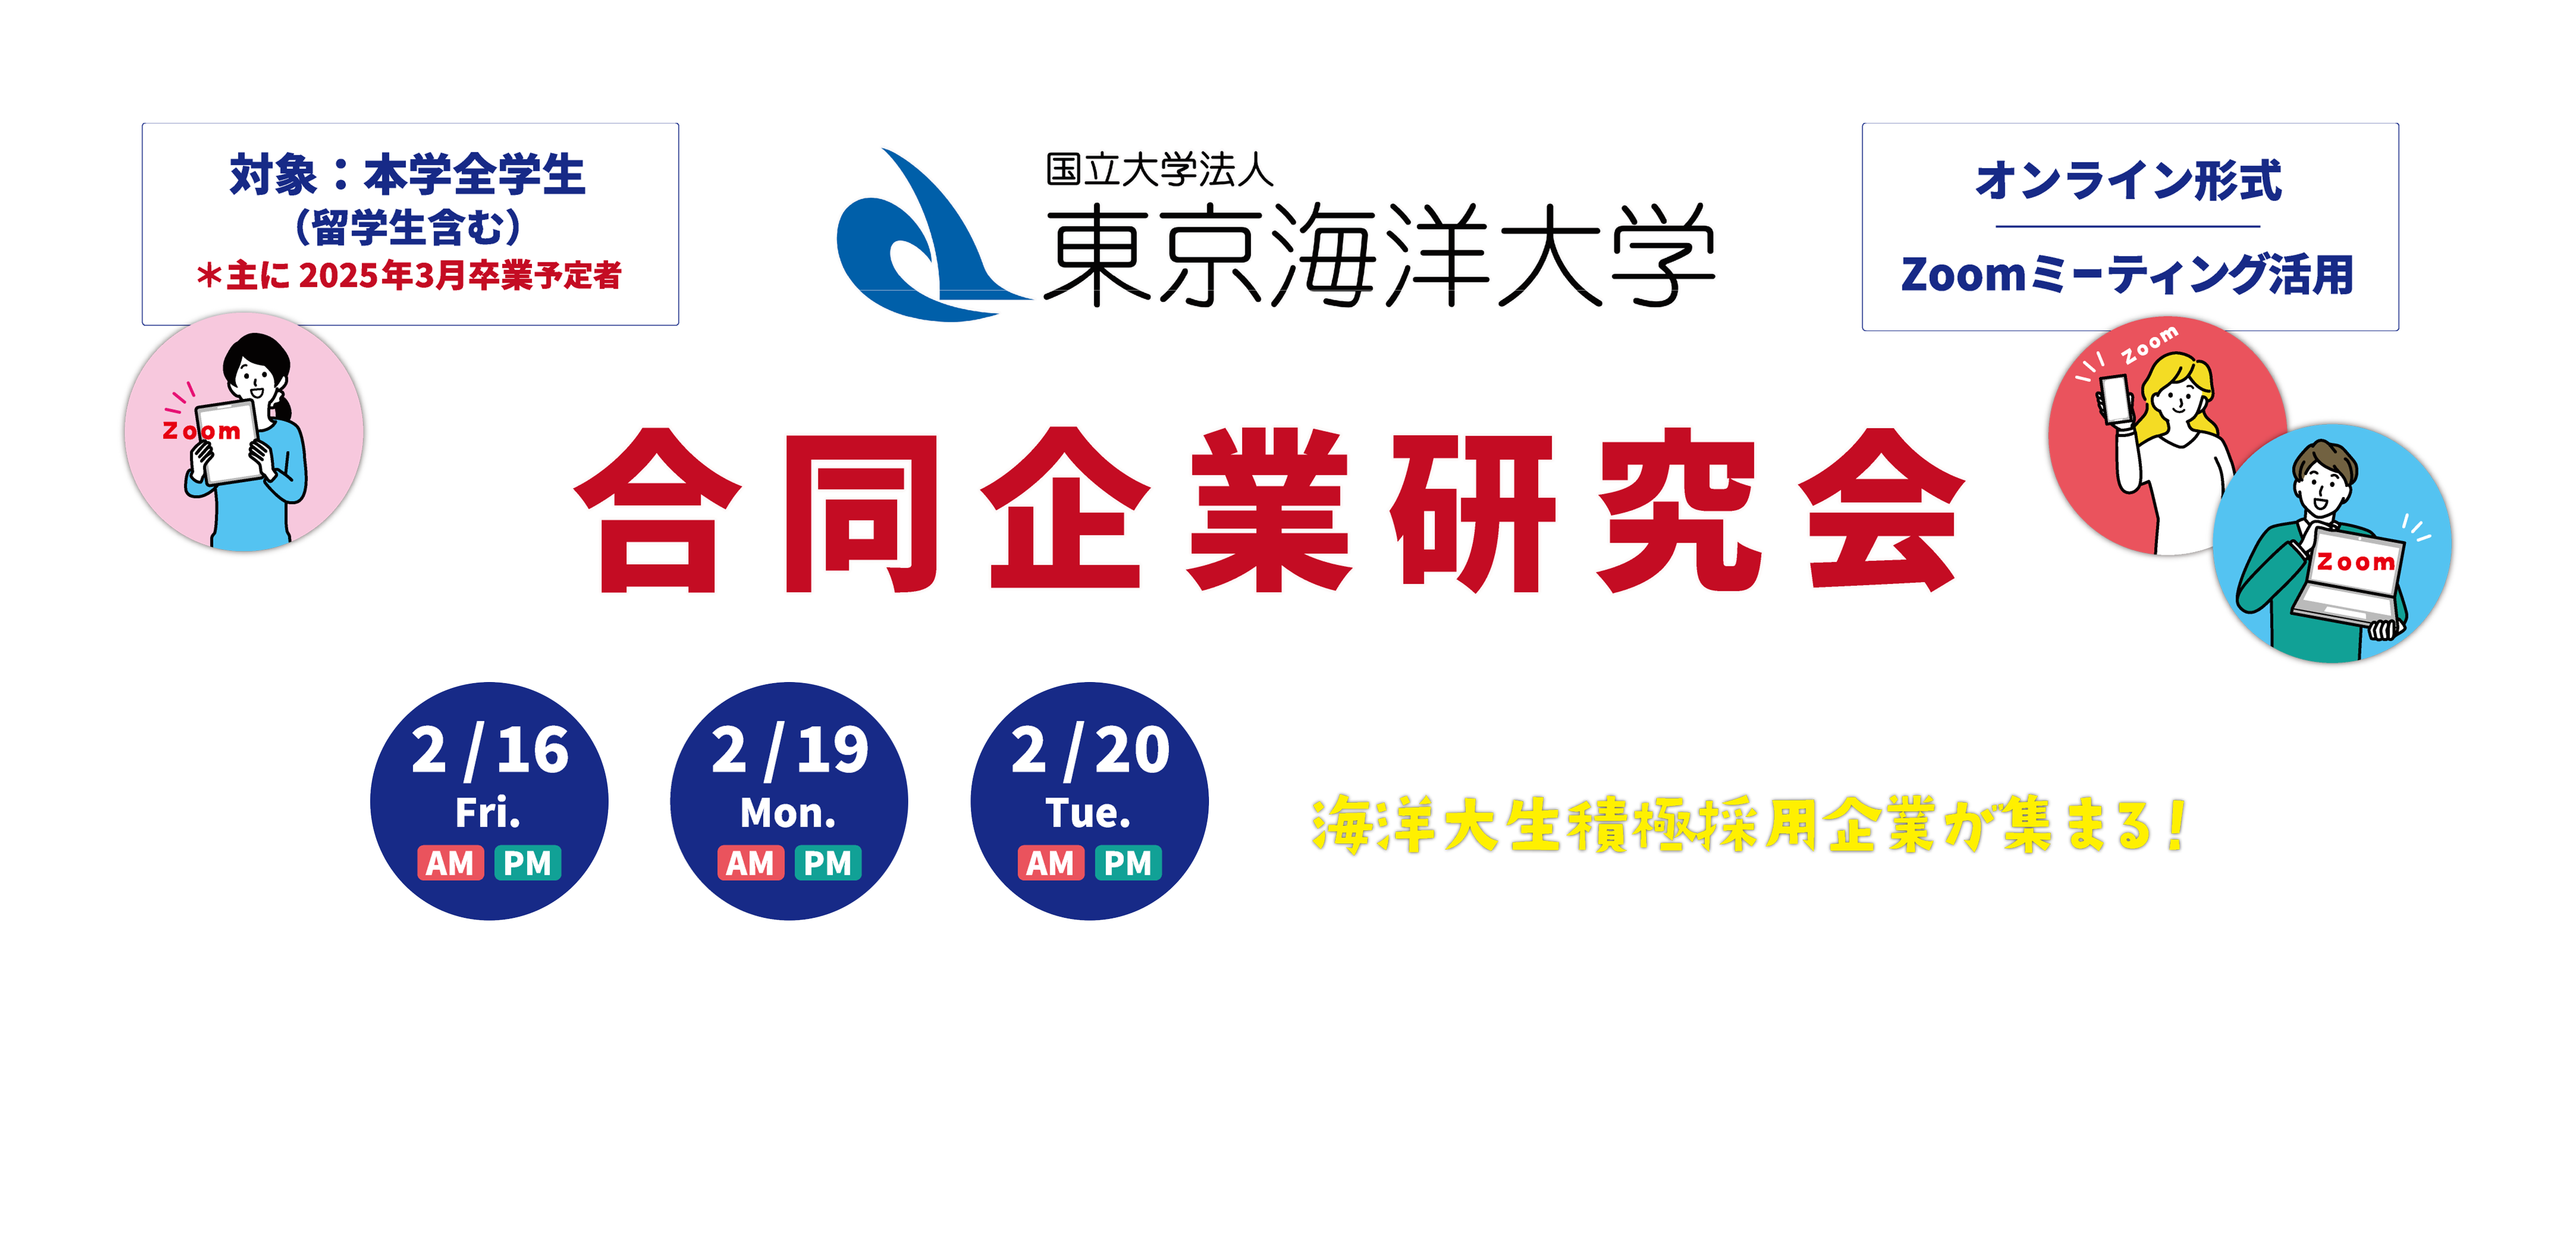 東京海洋大学合同企業研究会（オンライン形式 Zoomミーティング活用）2/16（金）AM・PM 2/19（月）AM・PM 2/20（火）AM・PM 対象：本学全学生（留学生含む） ※主に2025年3月卒業予定者